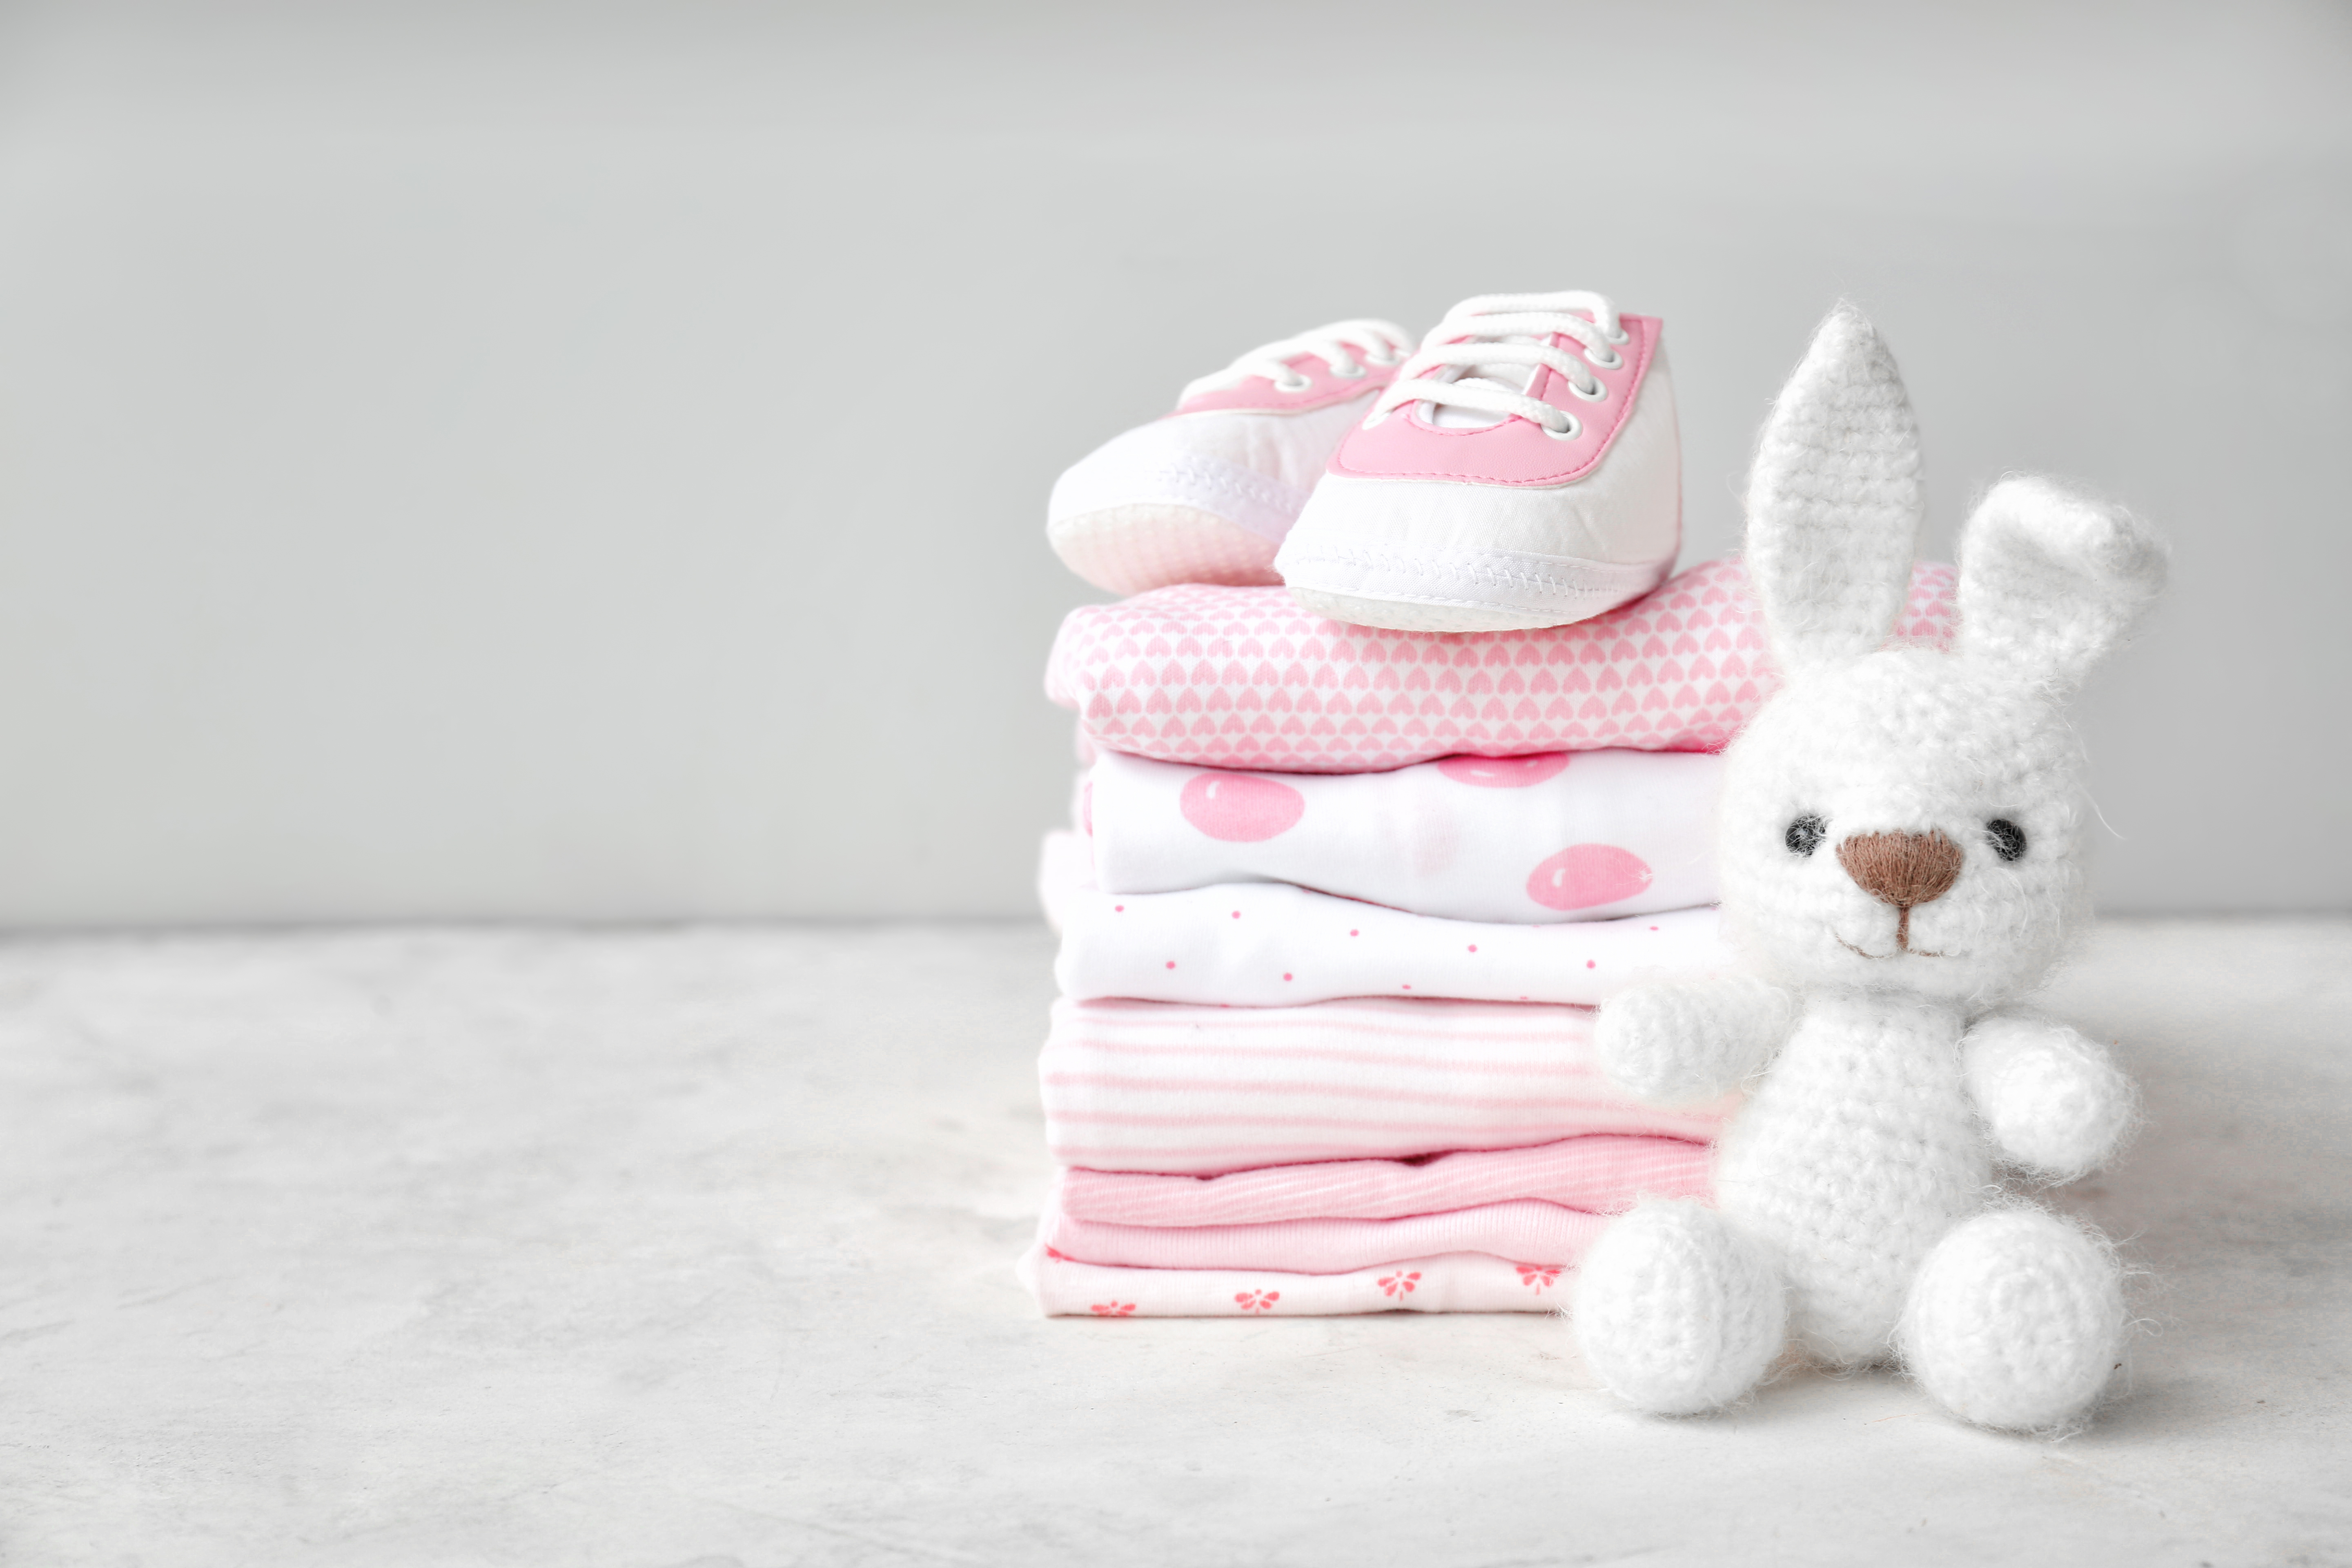 Une pile de vêtements de bébé, des chaussures et un jouet posés sur une table | Source : Shutterstock